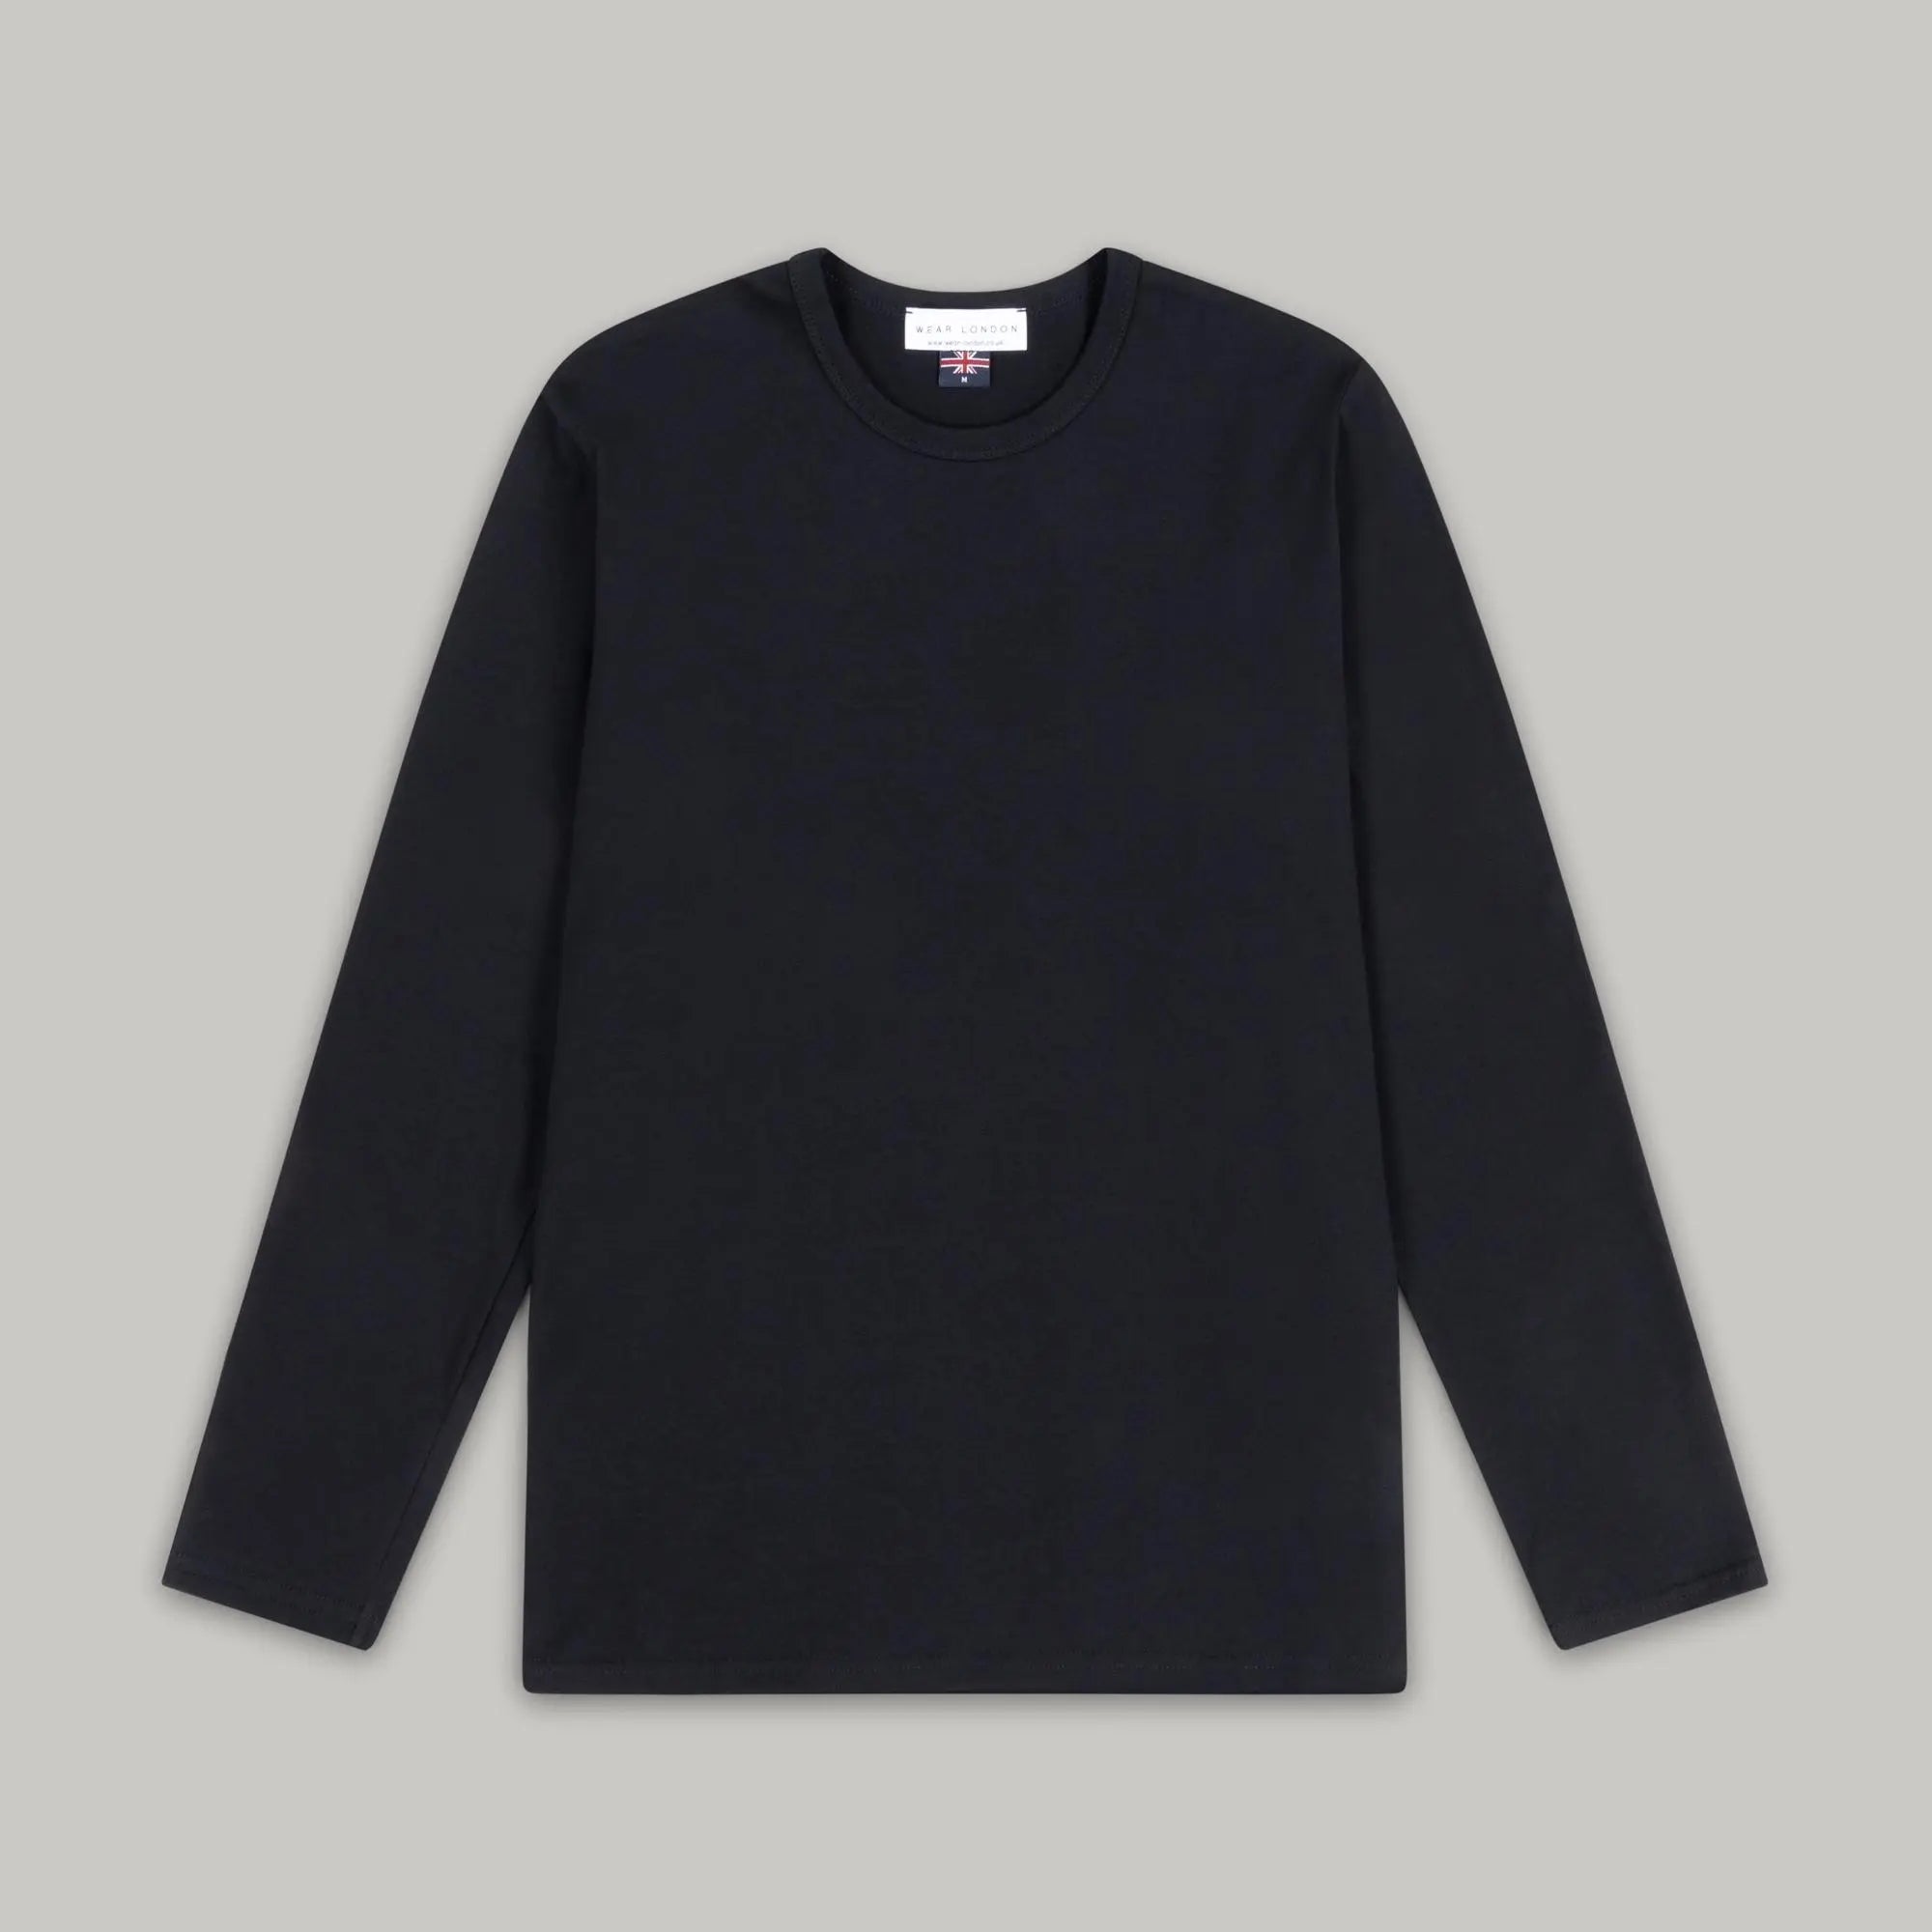 Bevis Long Sleeve t-shirt - Black - Wear London